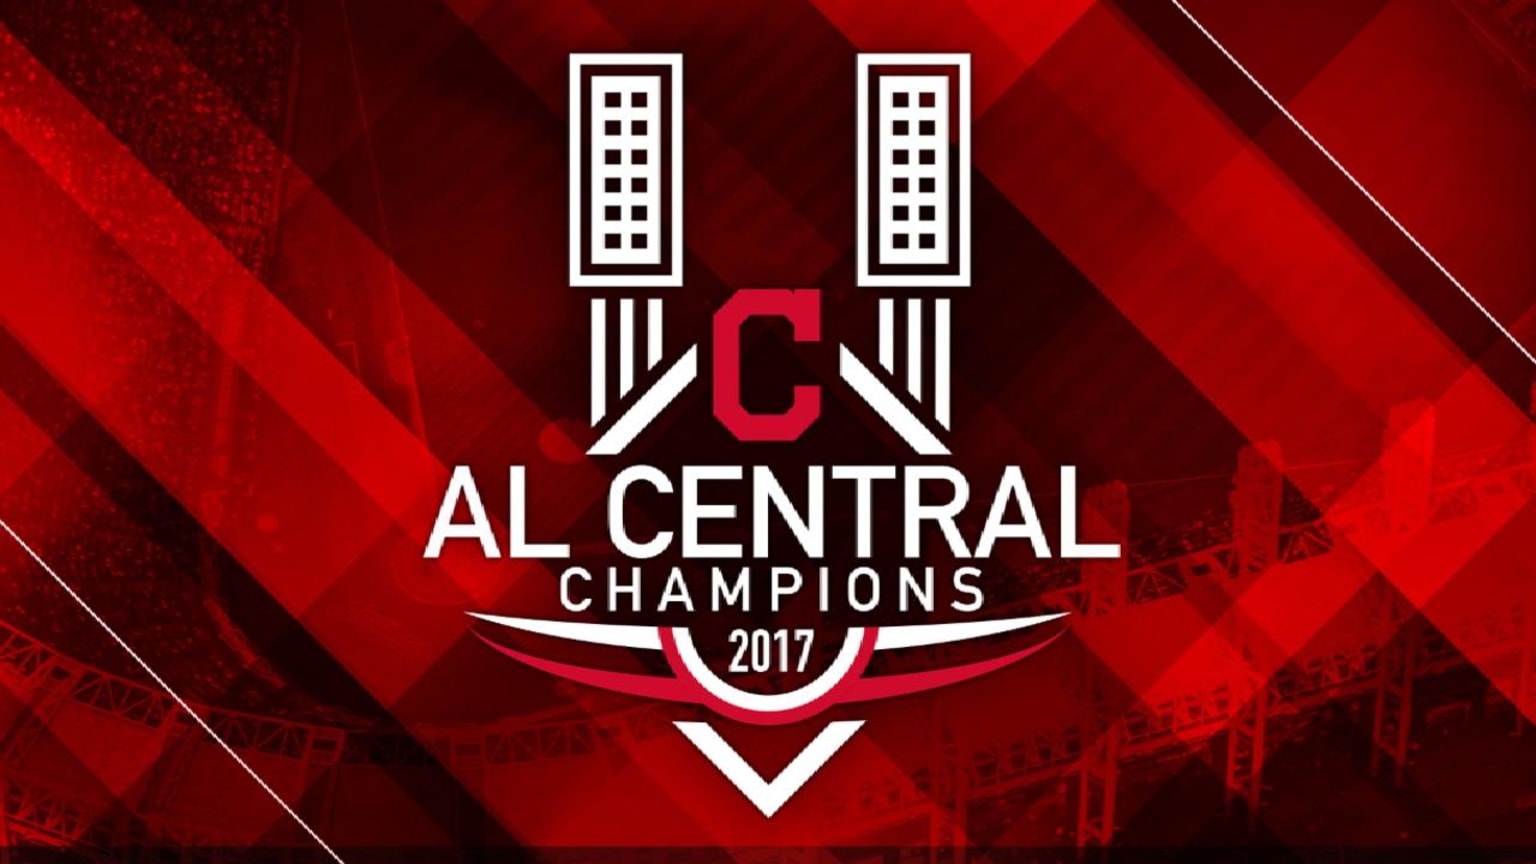 AL Central champs again 09/17/2017 Cleveland Guardians